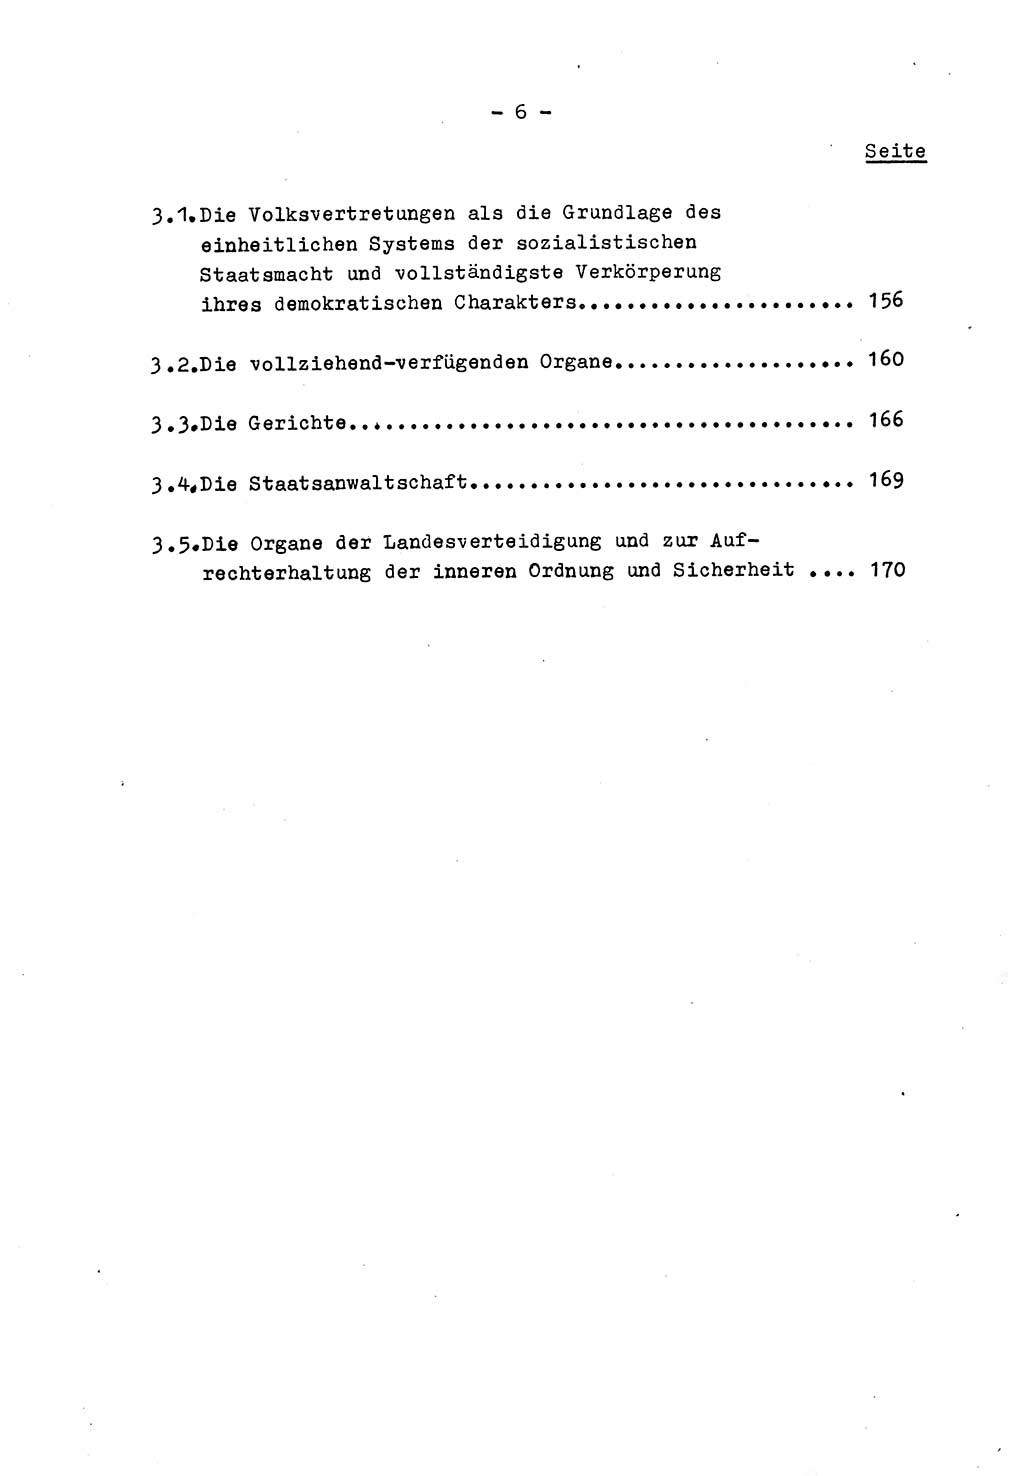 Marxistisch-leninistische Staats- und Rechtstheorie [Deutsche Demokratische Republik (DDR)] 1975, Seite 6 (ML St.-R.-Th. DDR 1975, S. 6)